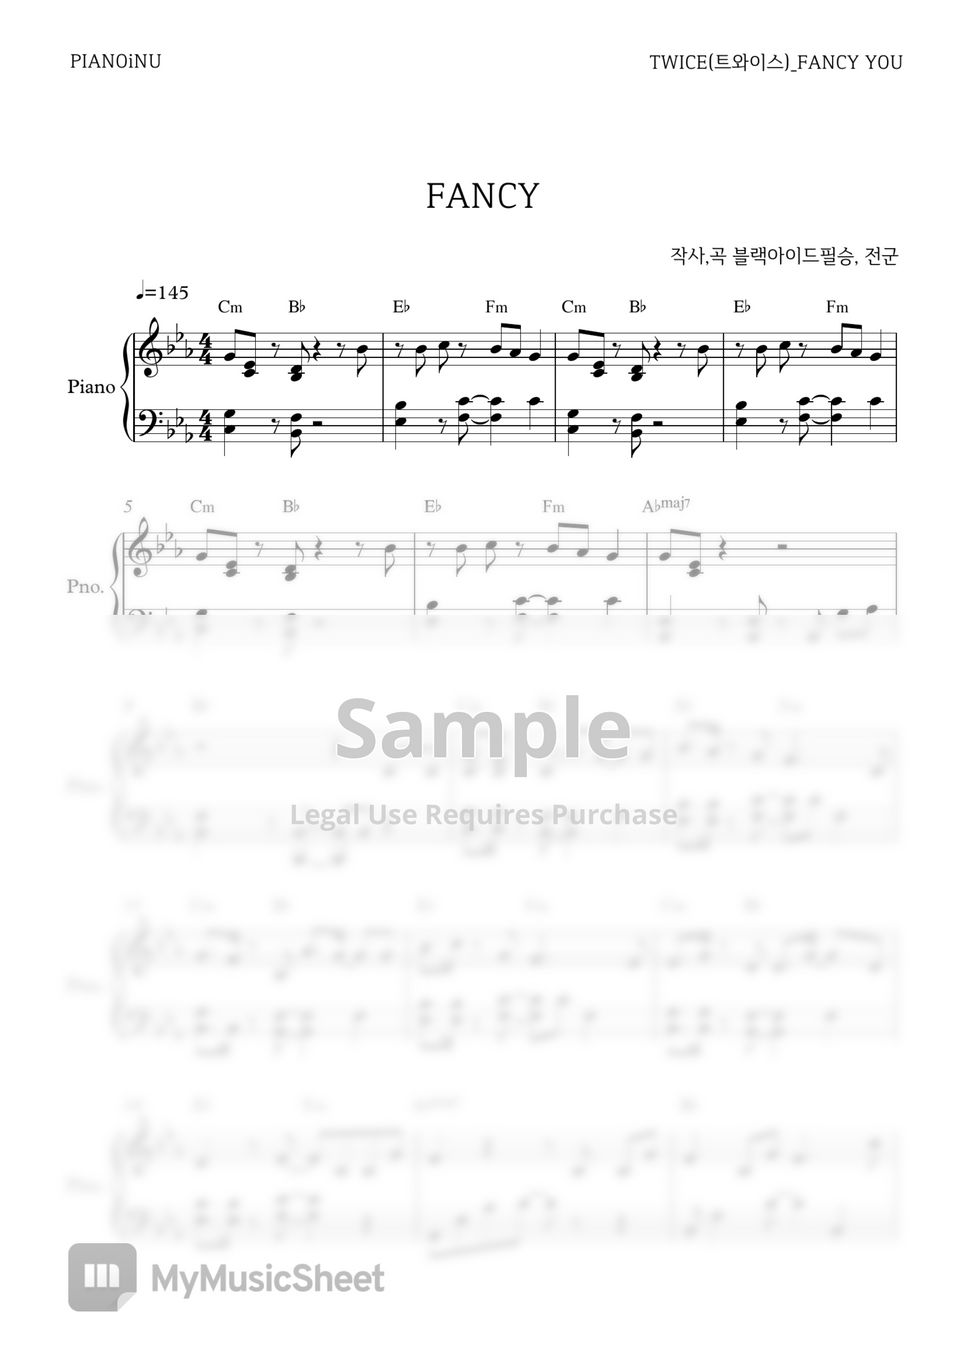 TWICE - FANCY PIANOiNU